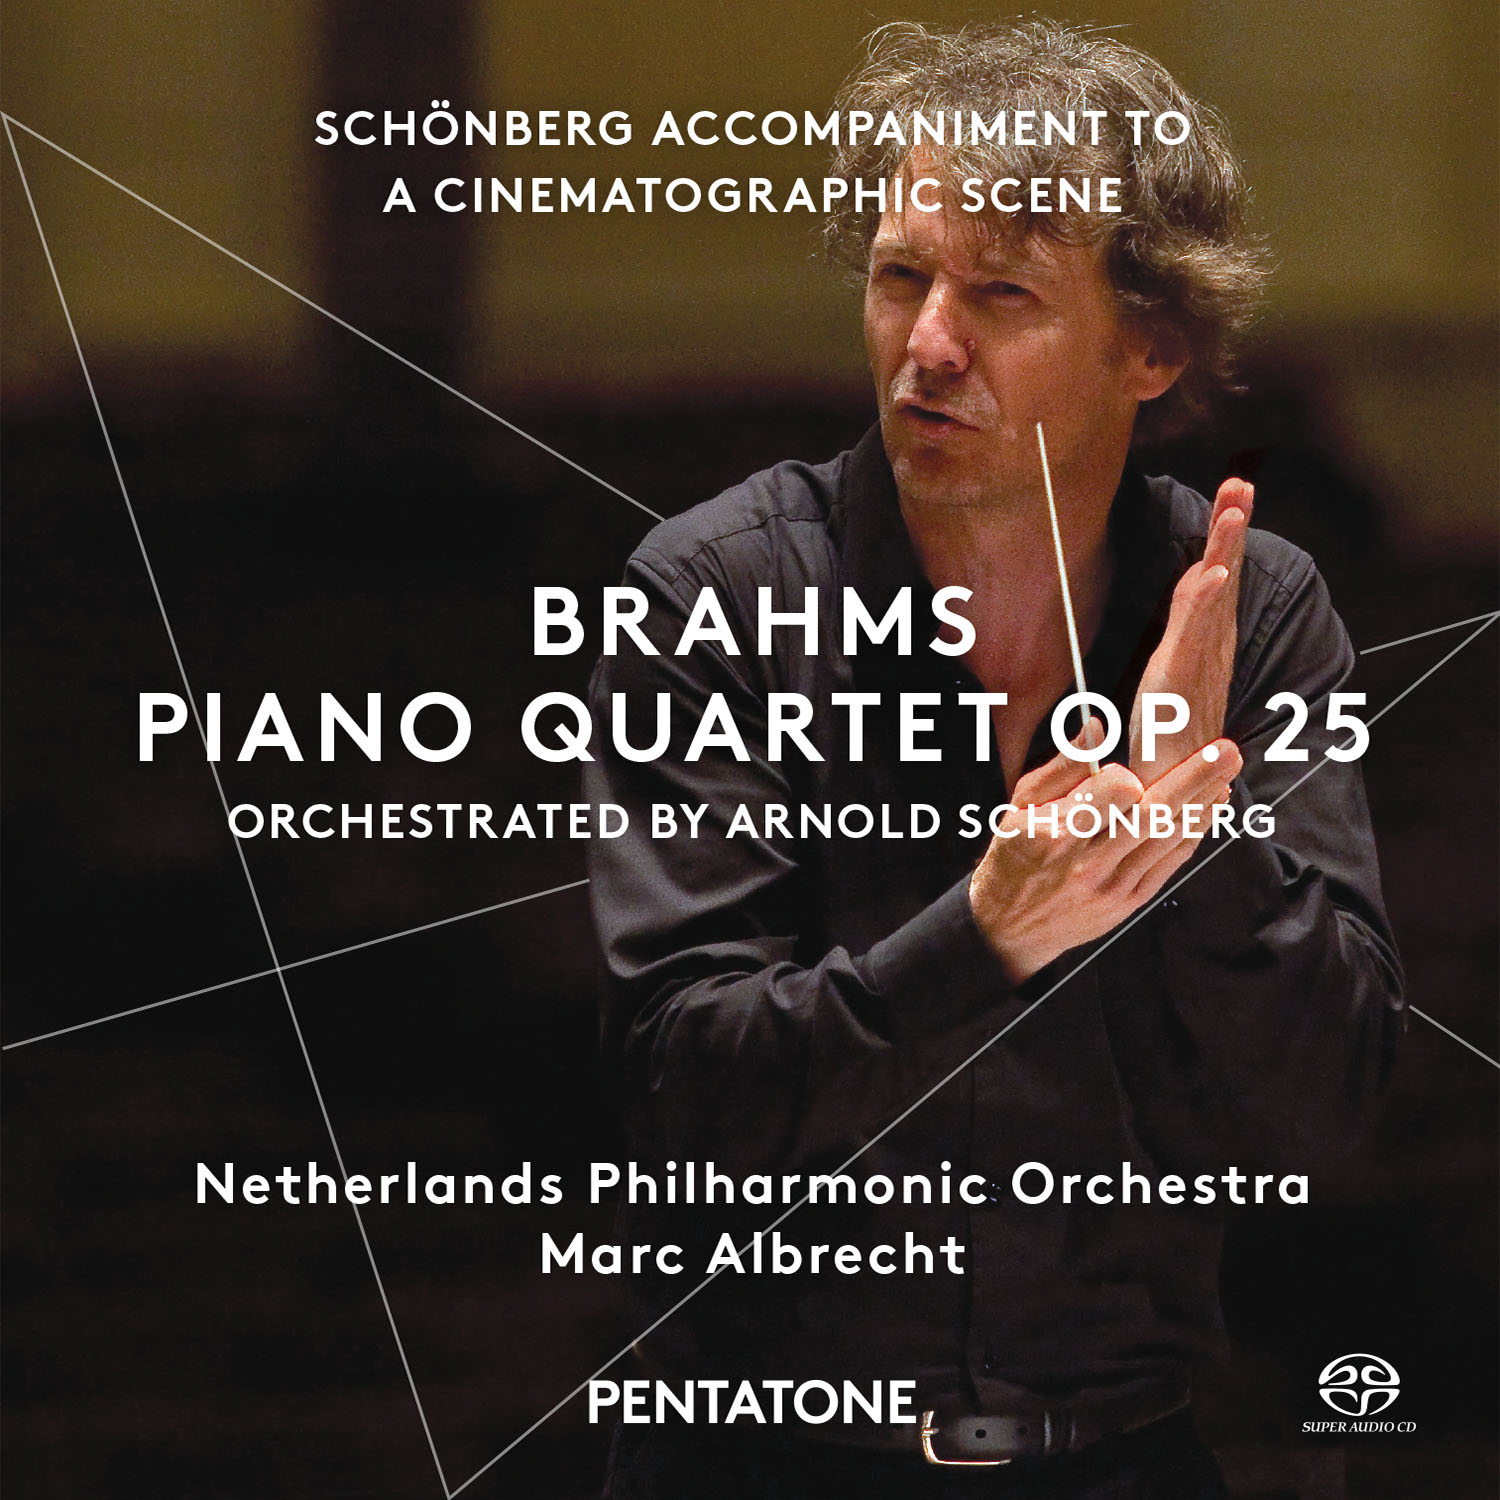 Netherlands Philharmonic Orchestra, Marc Albrecht – Brahms: Piano Quartet Op.25; Schonberg (2015) [DSF DSD64/2.82MHz]